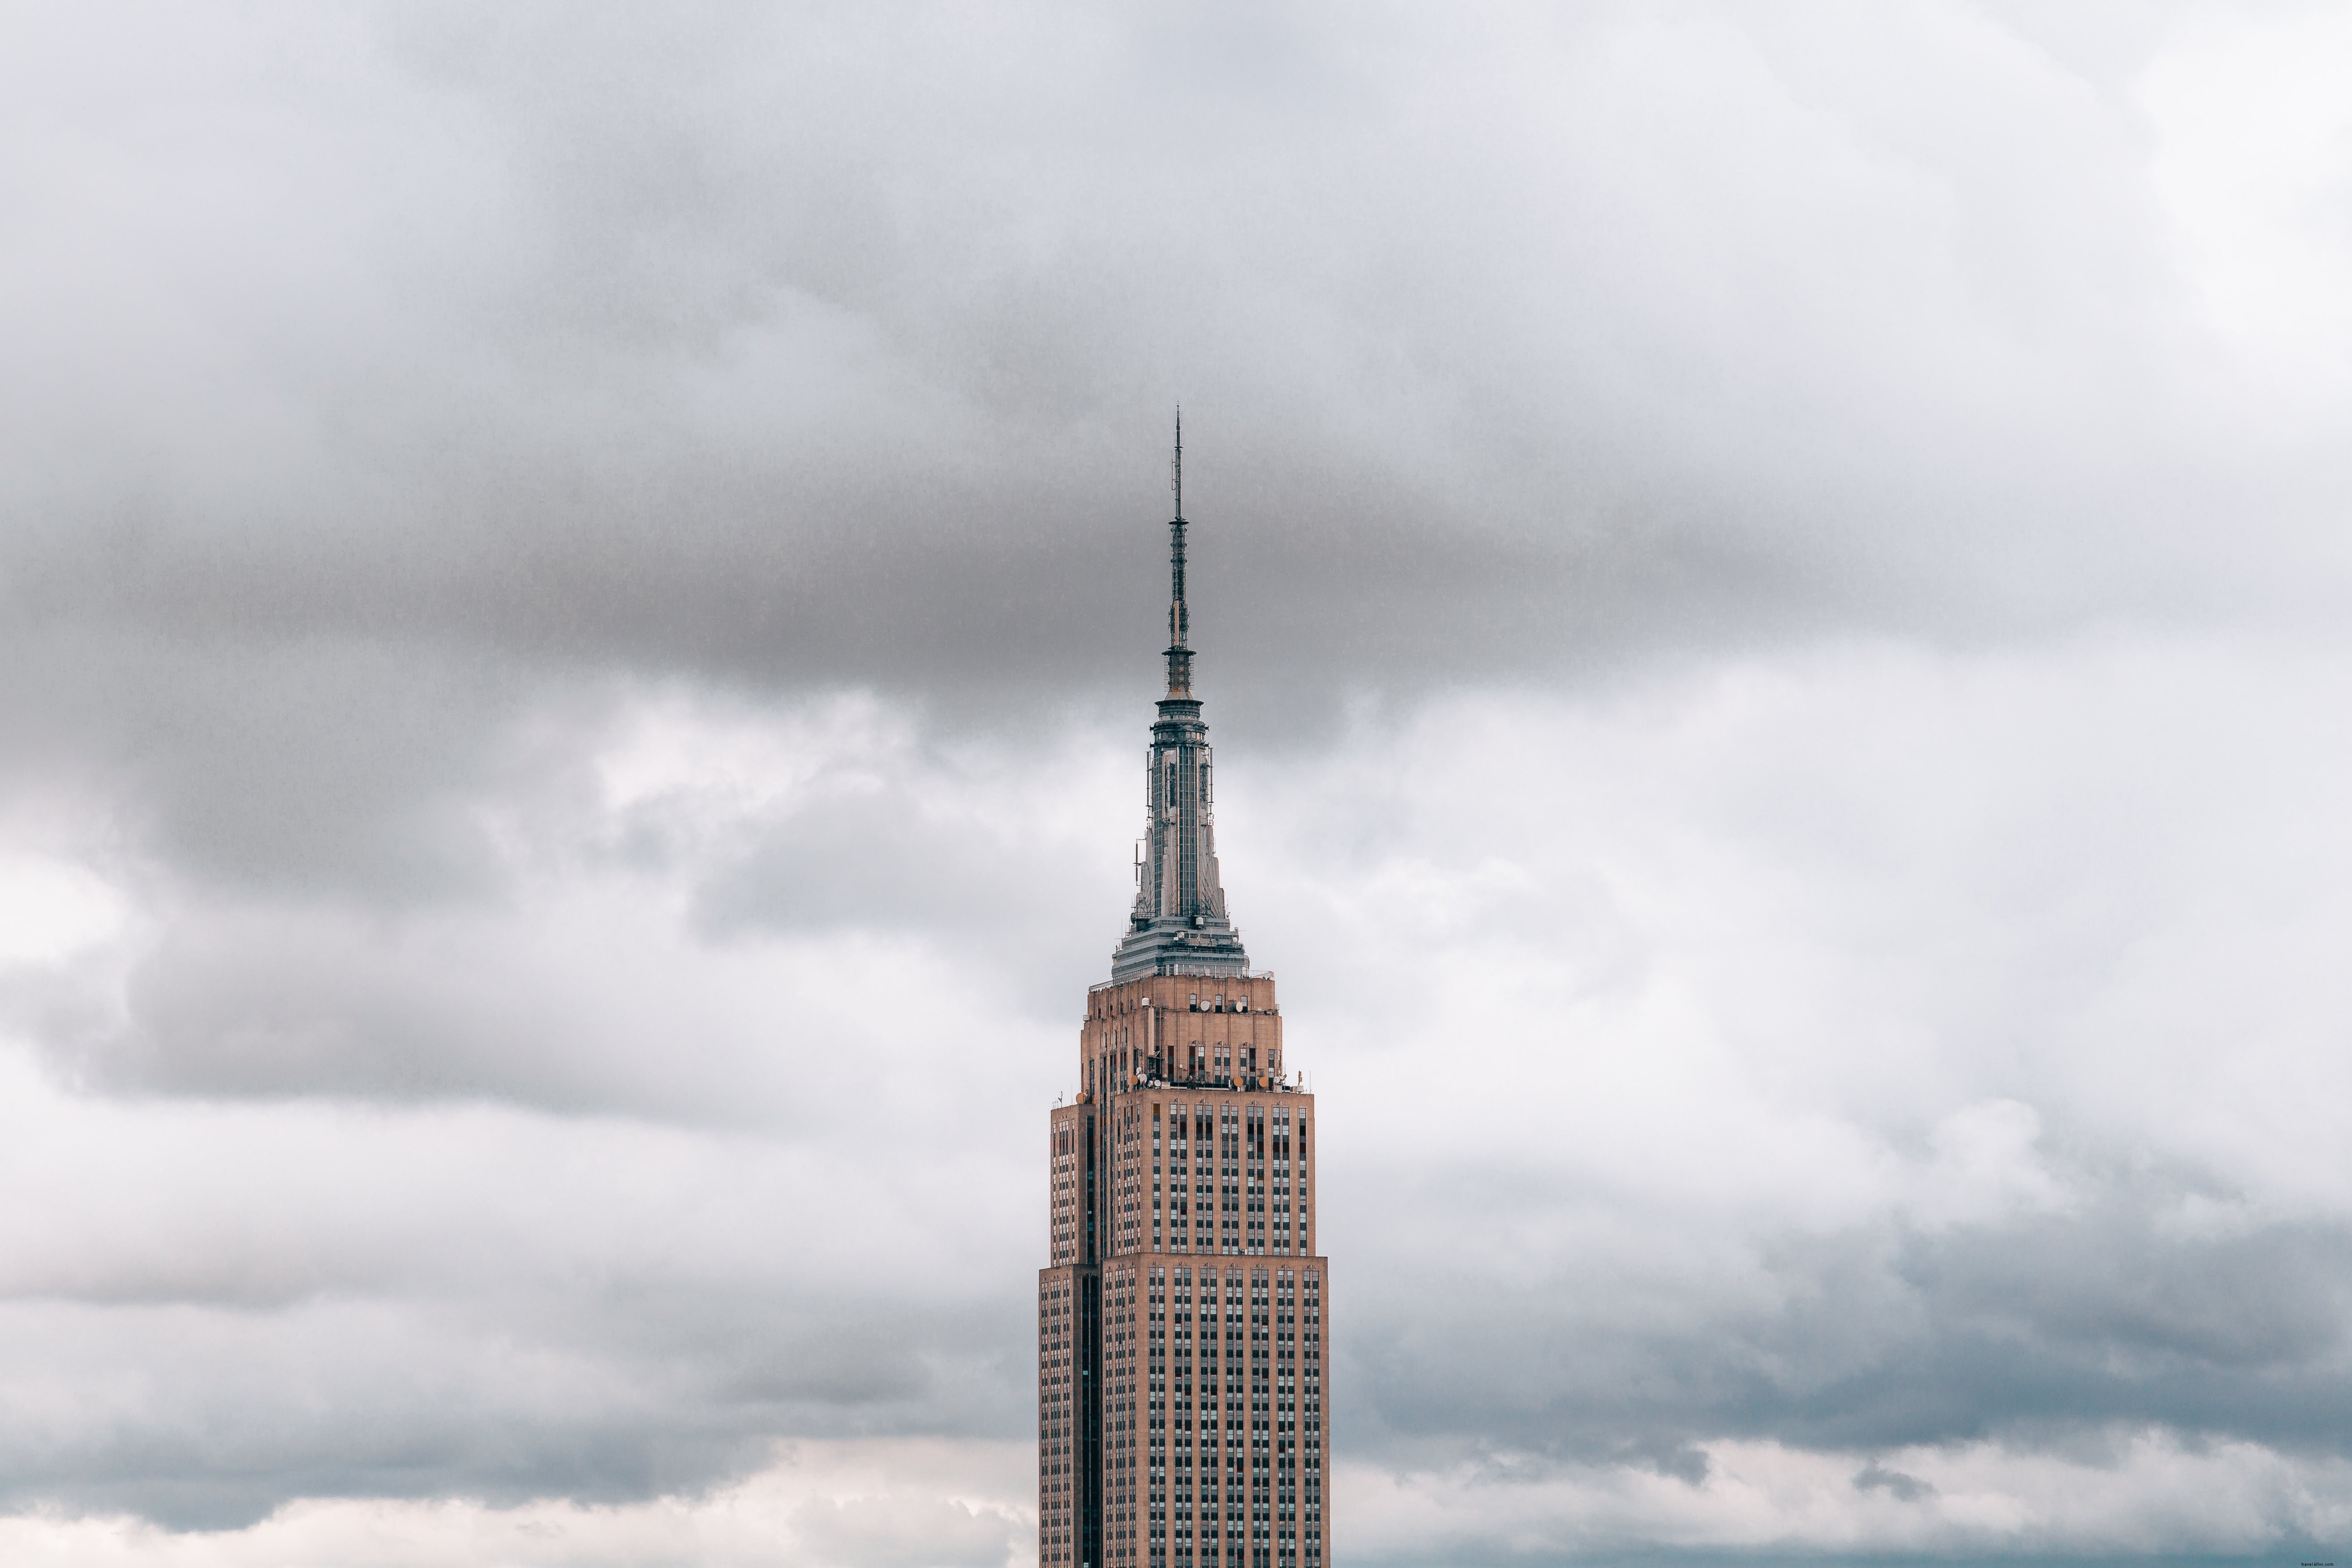 Foto do céu nublado do Empire State